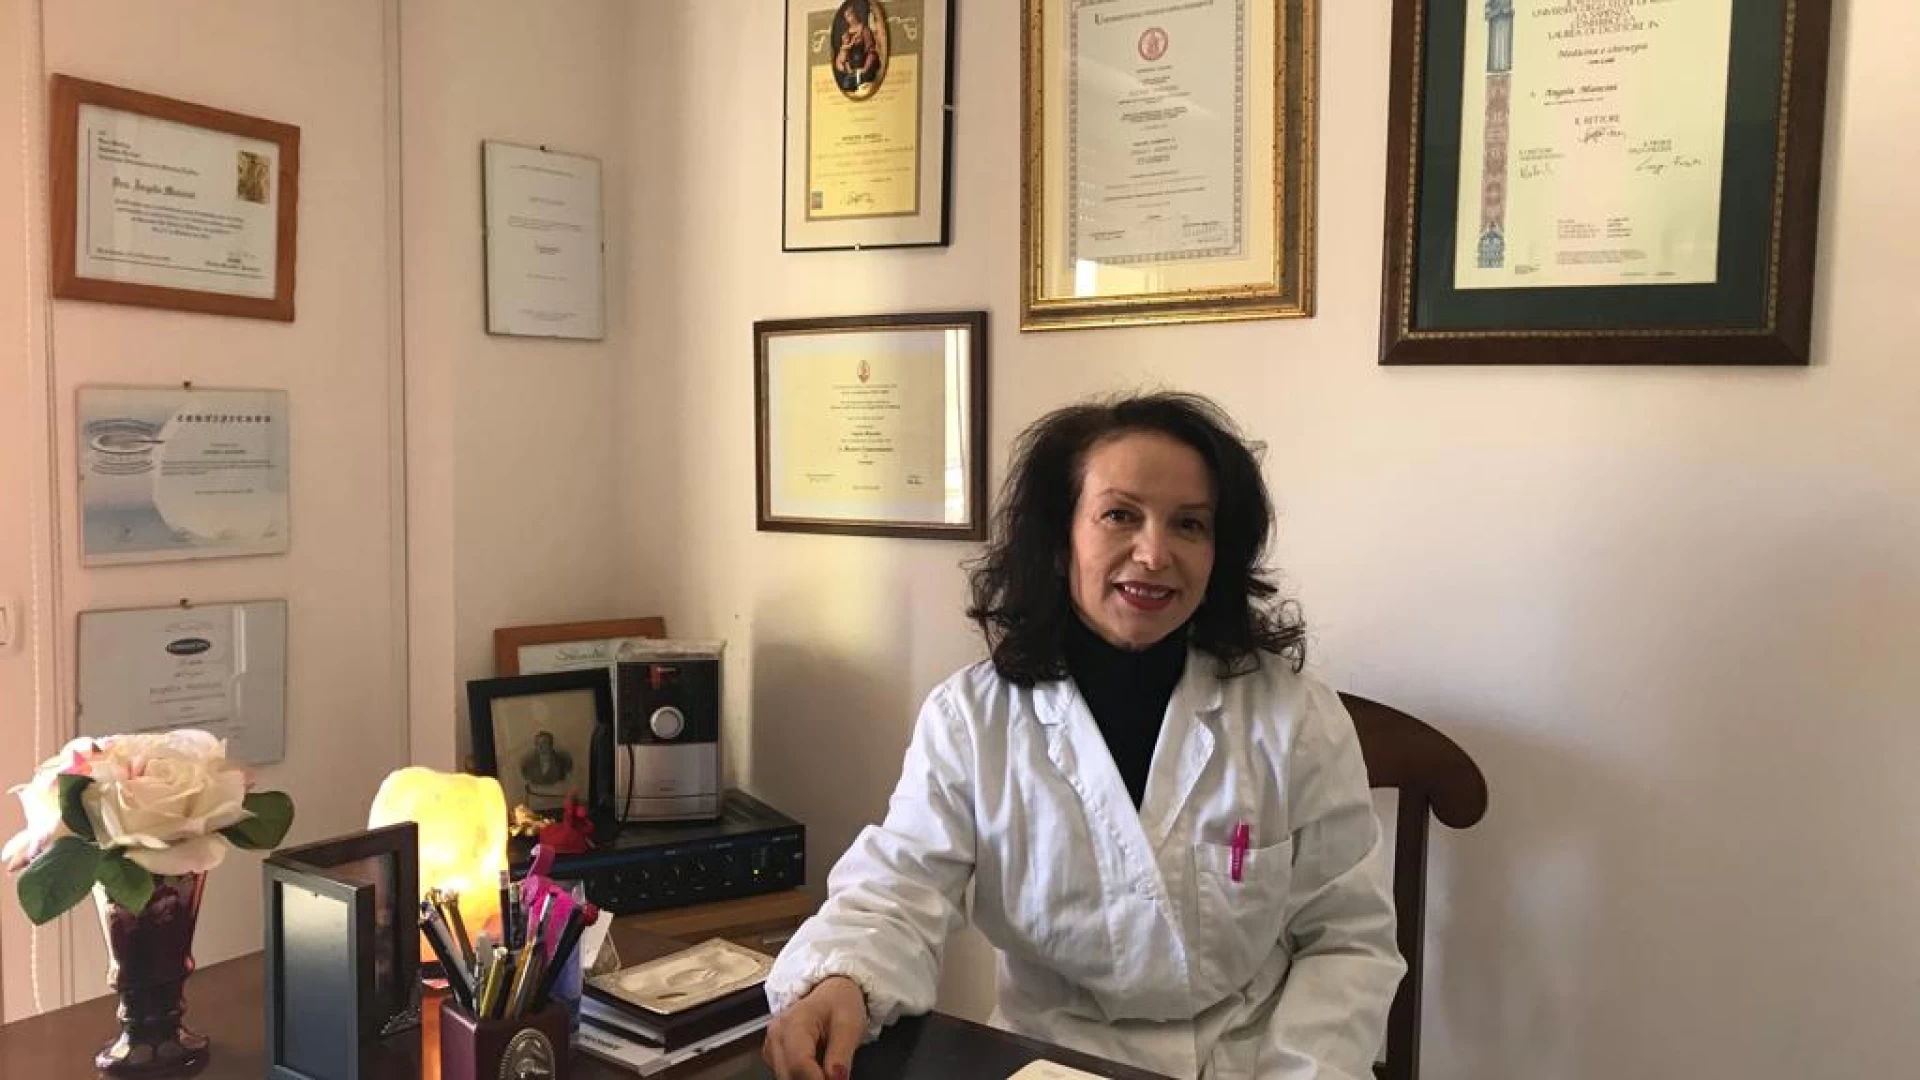 Campobasso: professionalità elevata nel settore della chirurgia estetica. La storia della dottoressa Angela Mancini.